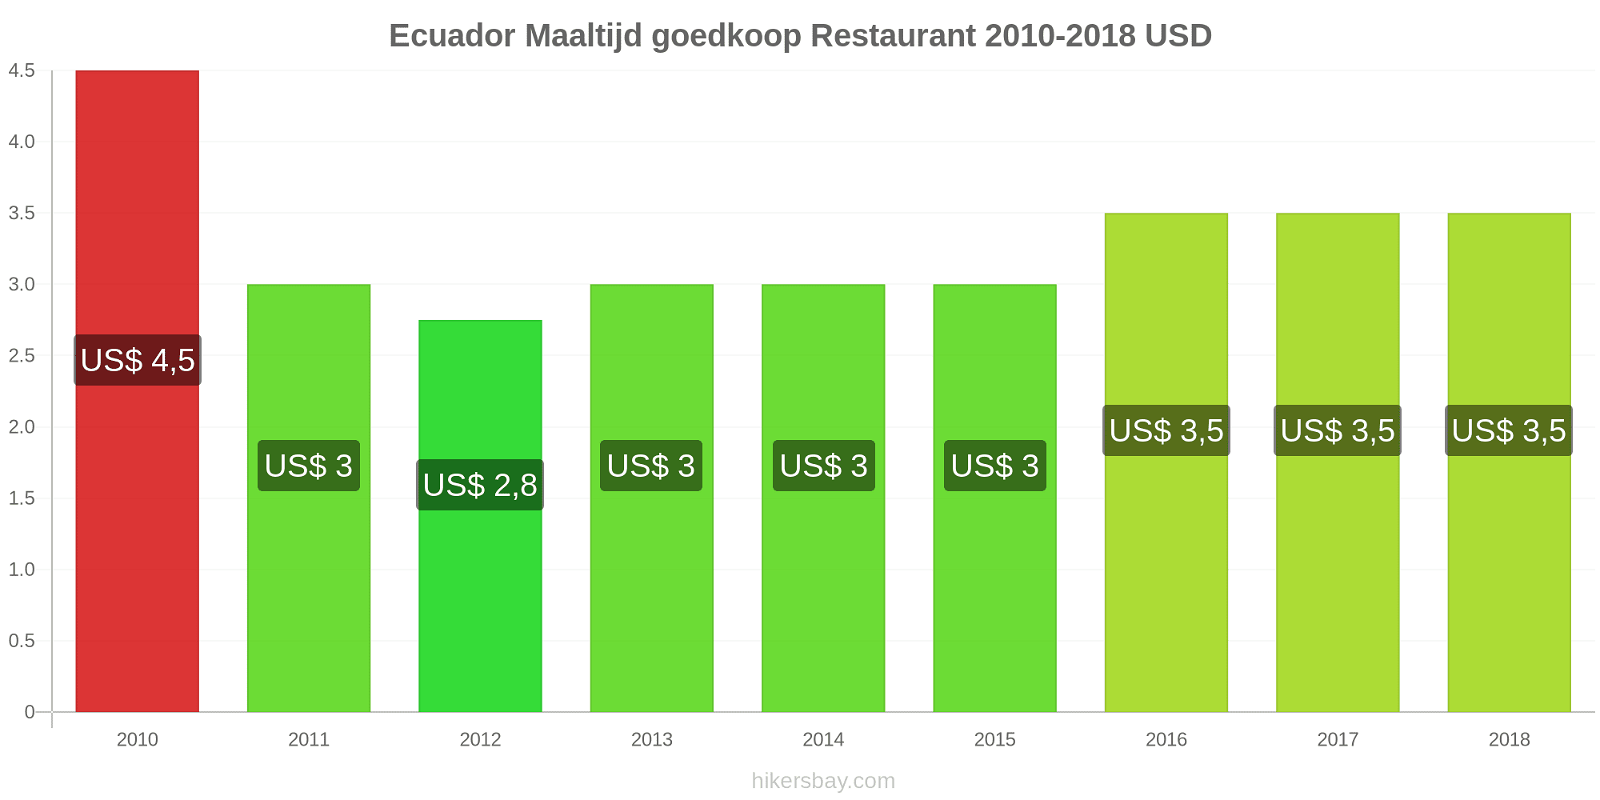 Ecuador prijswijzigingen Maaltijd in een goedkoop restaurant hikersbay.com